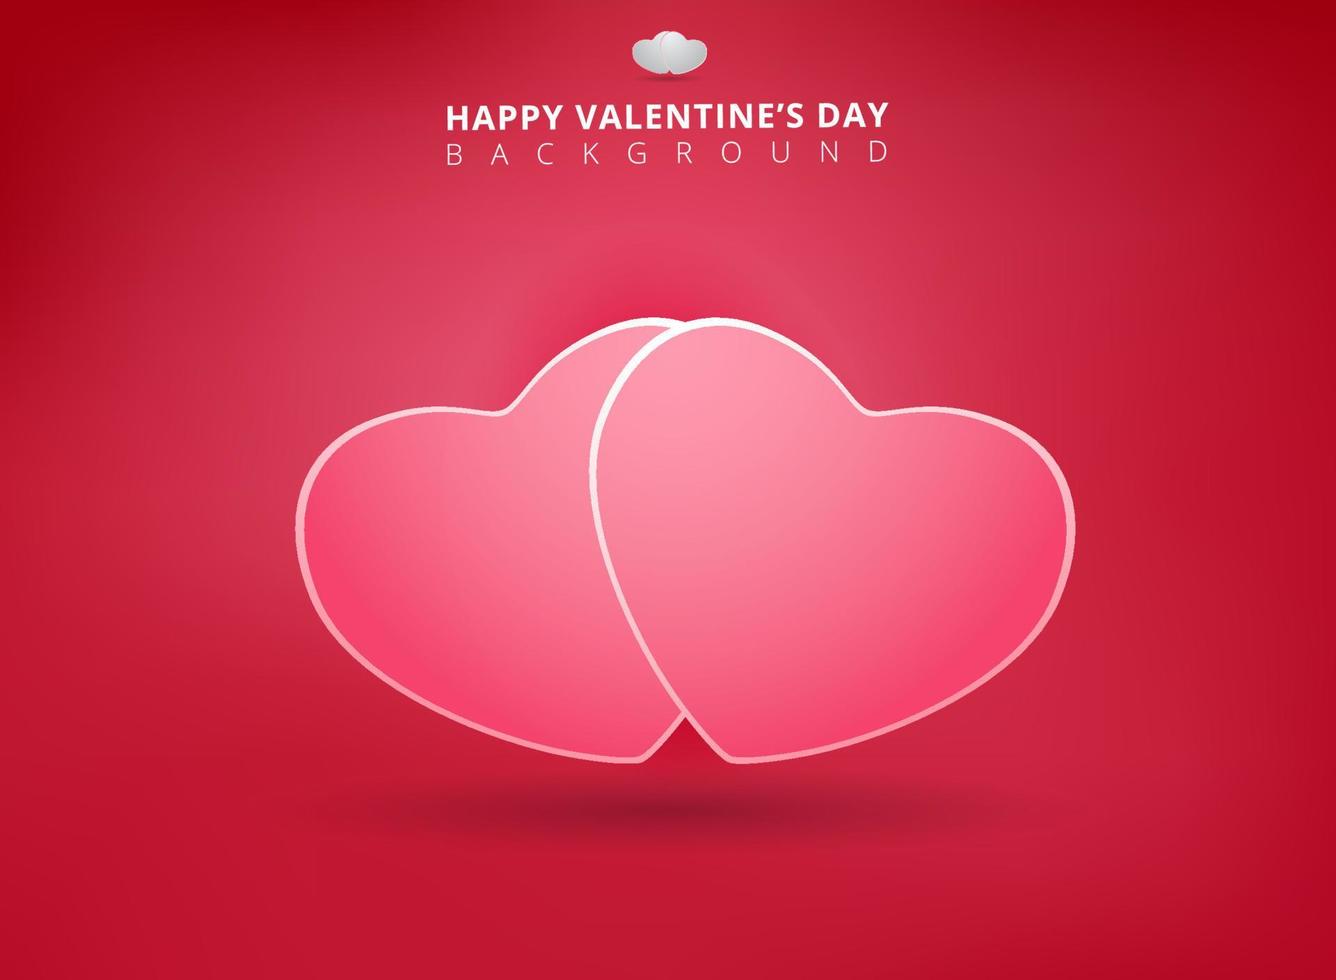 glad alla hjärtans dag på rosa bakgrund med tvillinghjärtan. vektor illustration